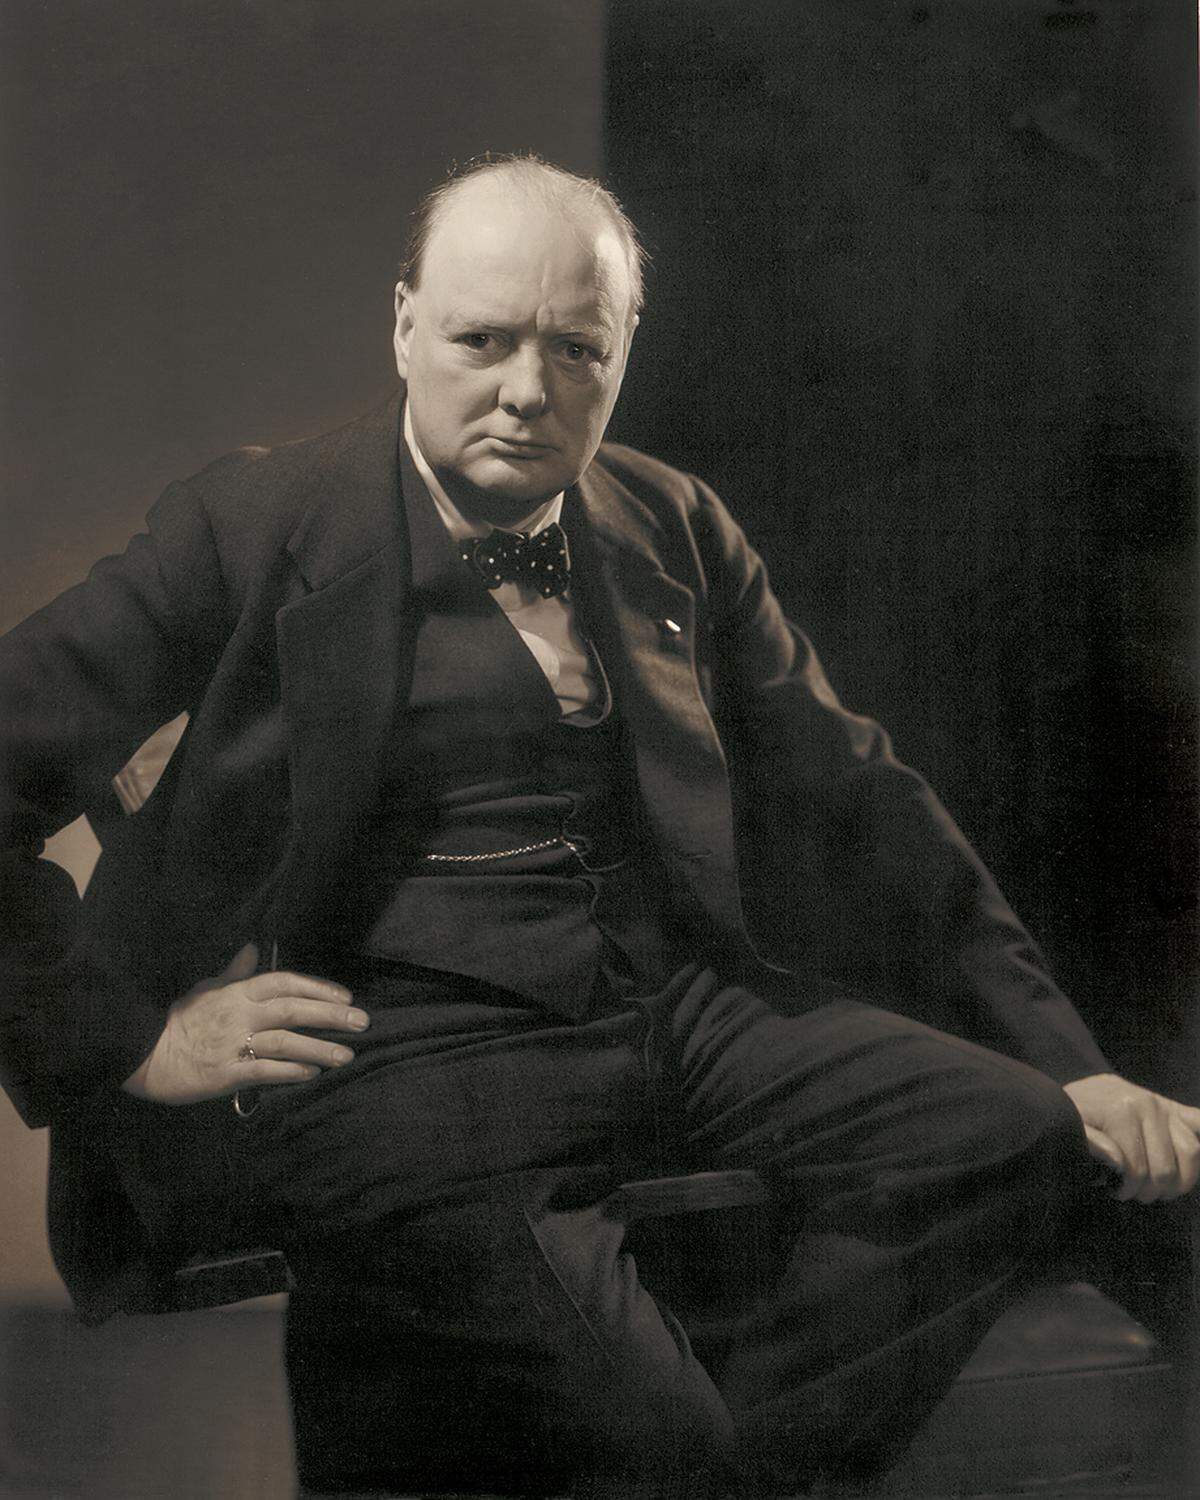 Berühmt wurde auch Steichens Porträt von Winston Churchill. Edward Steichen: Winston Churchill, 1932, Courtesy Condé Nast Archive